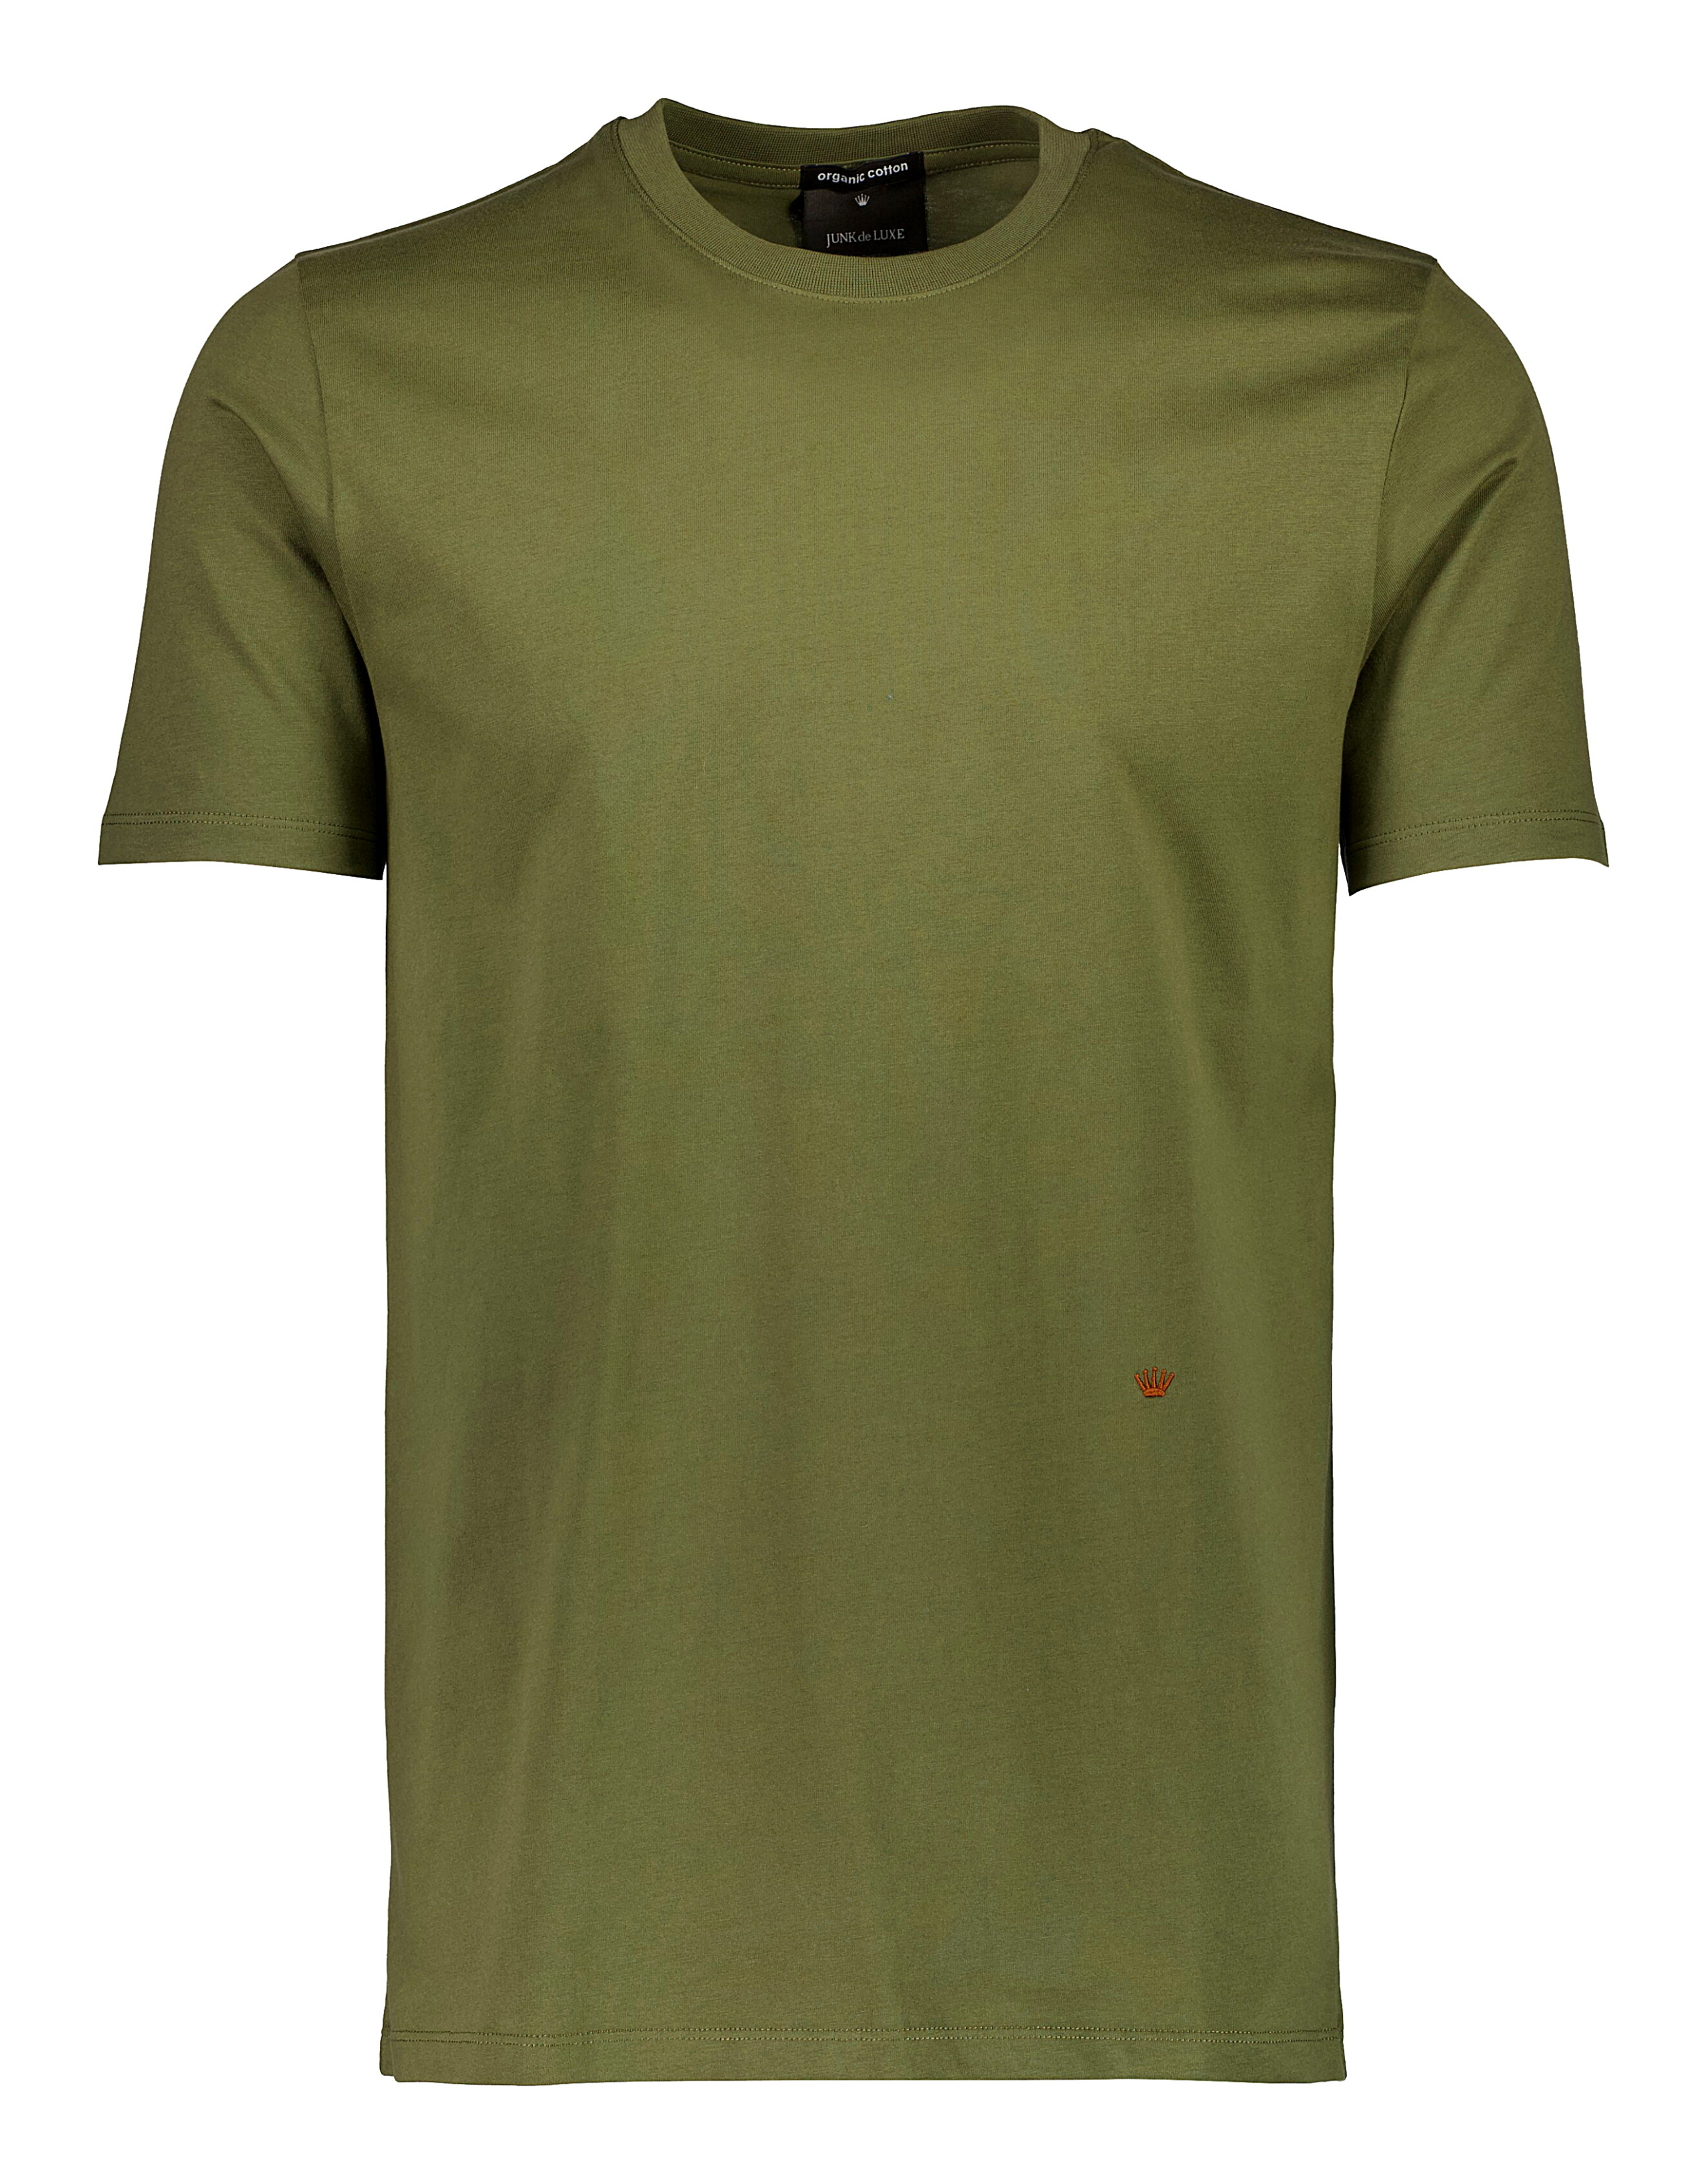 Junk de Luxe T-shirt grøn / dk army